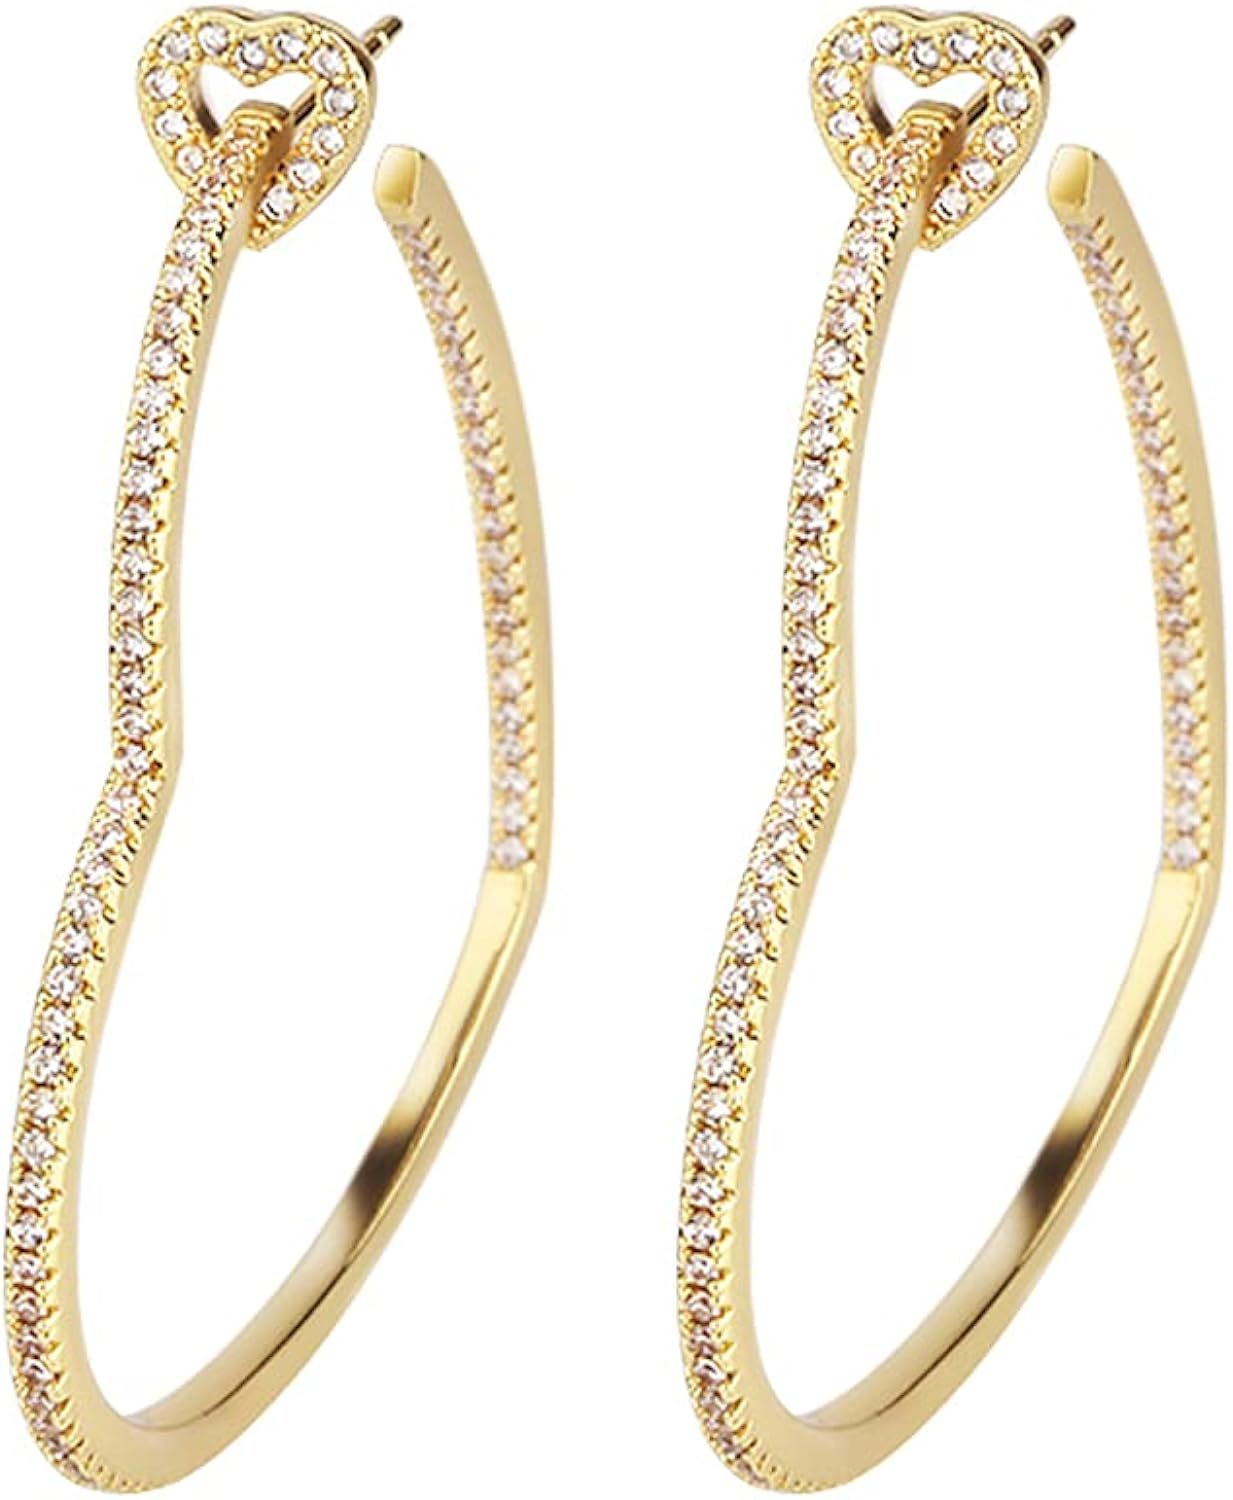 Heart Hoop Earrings - Rhinestone Heart Hoop Earrings Plated in Gold/White Gold for Women - Heart Ear | Amazon (US)